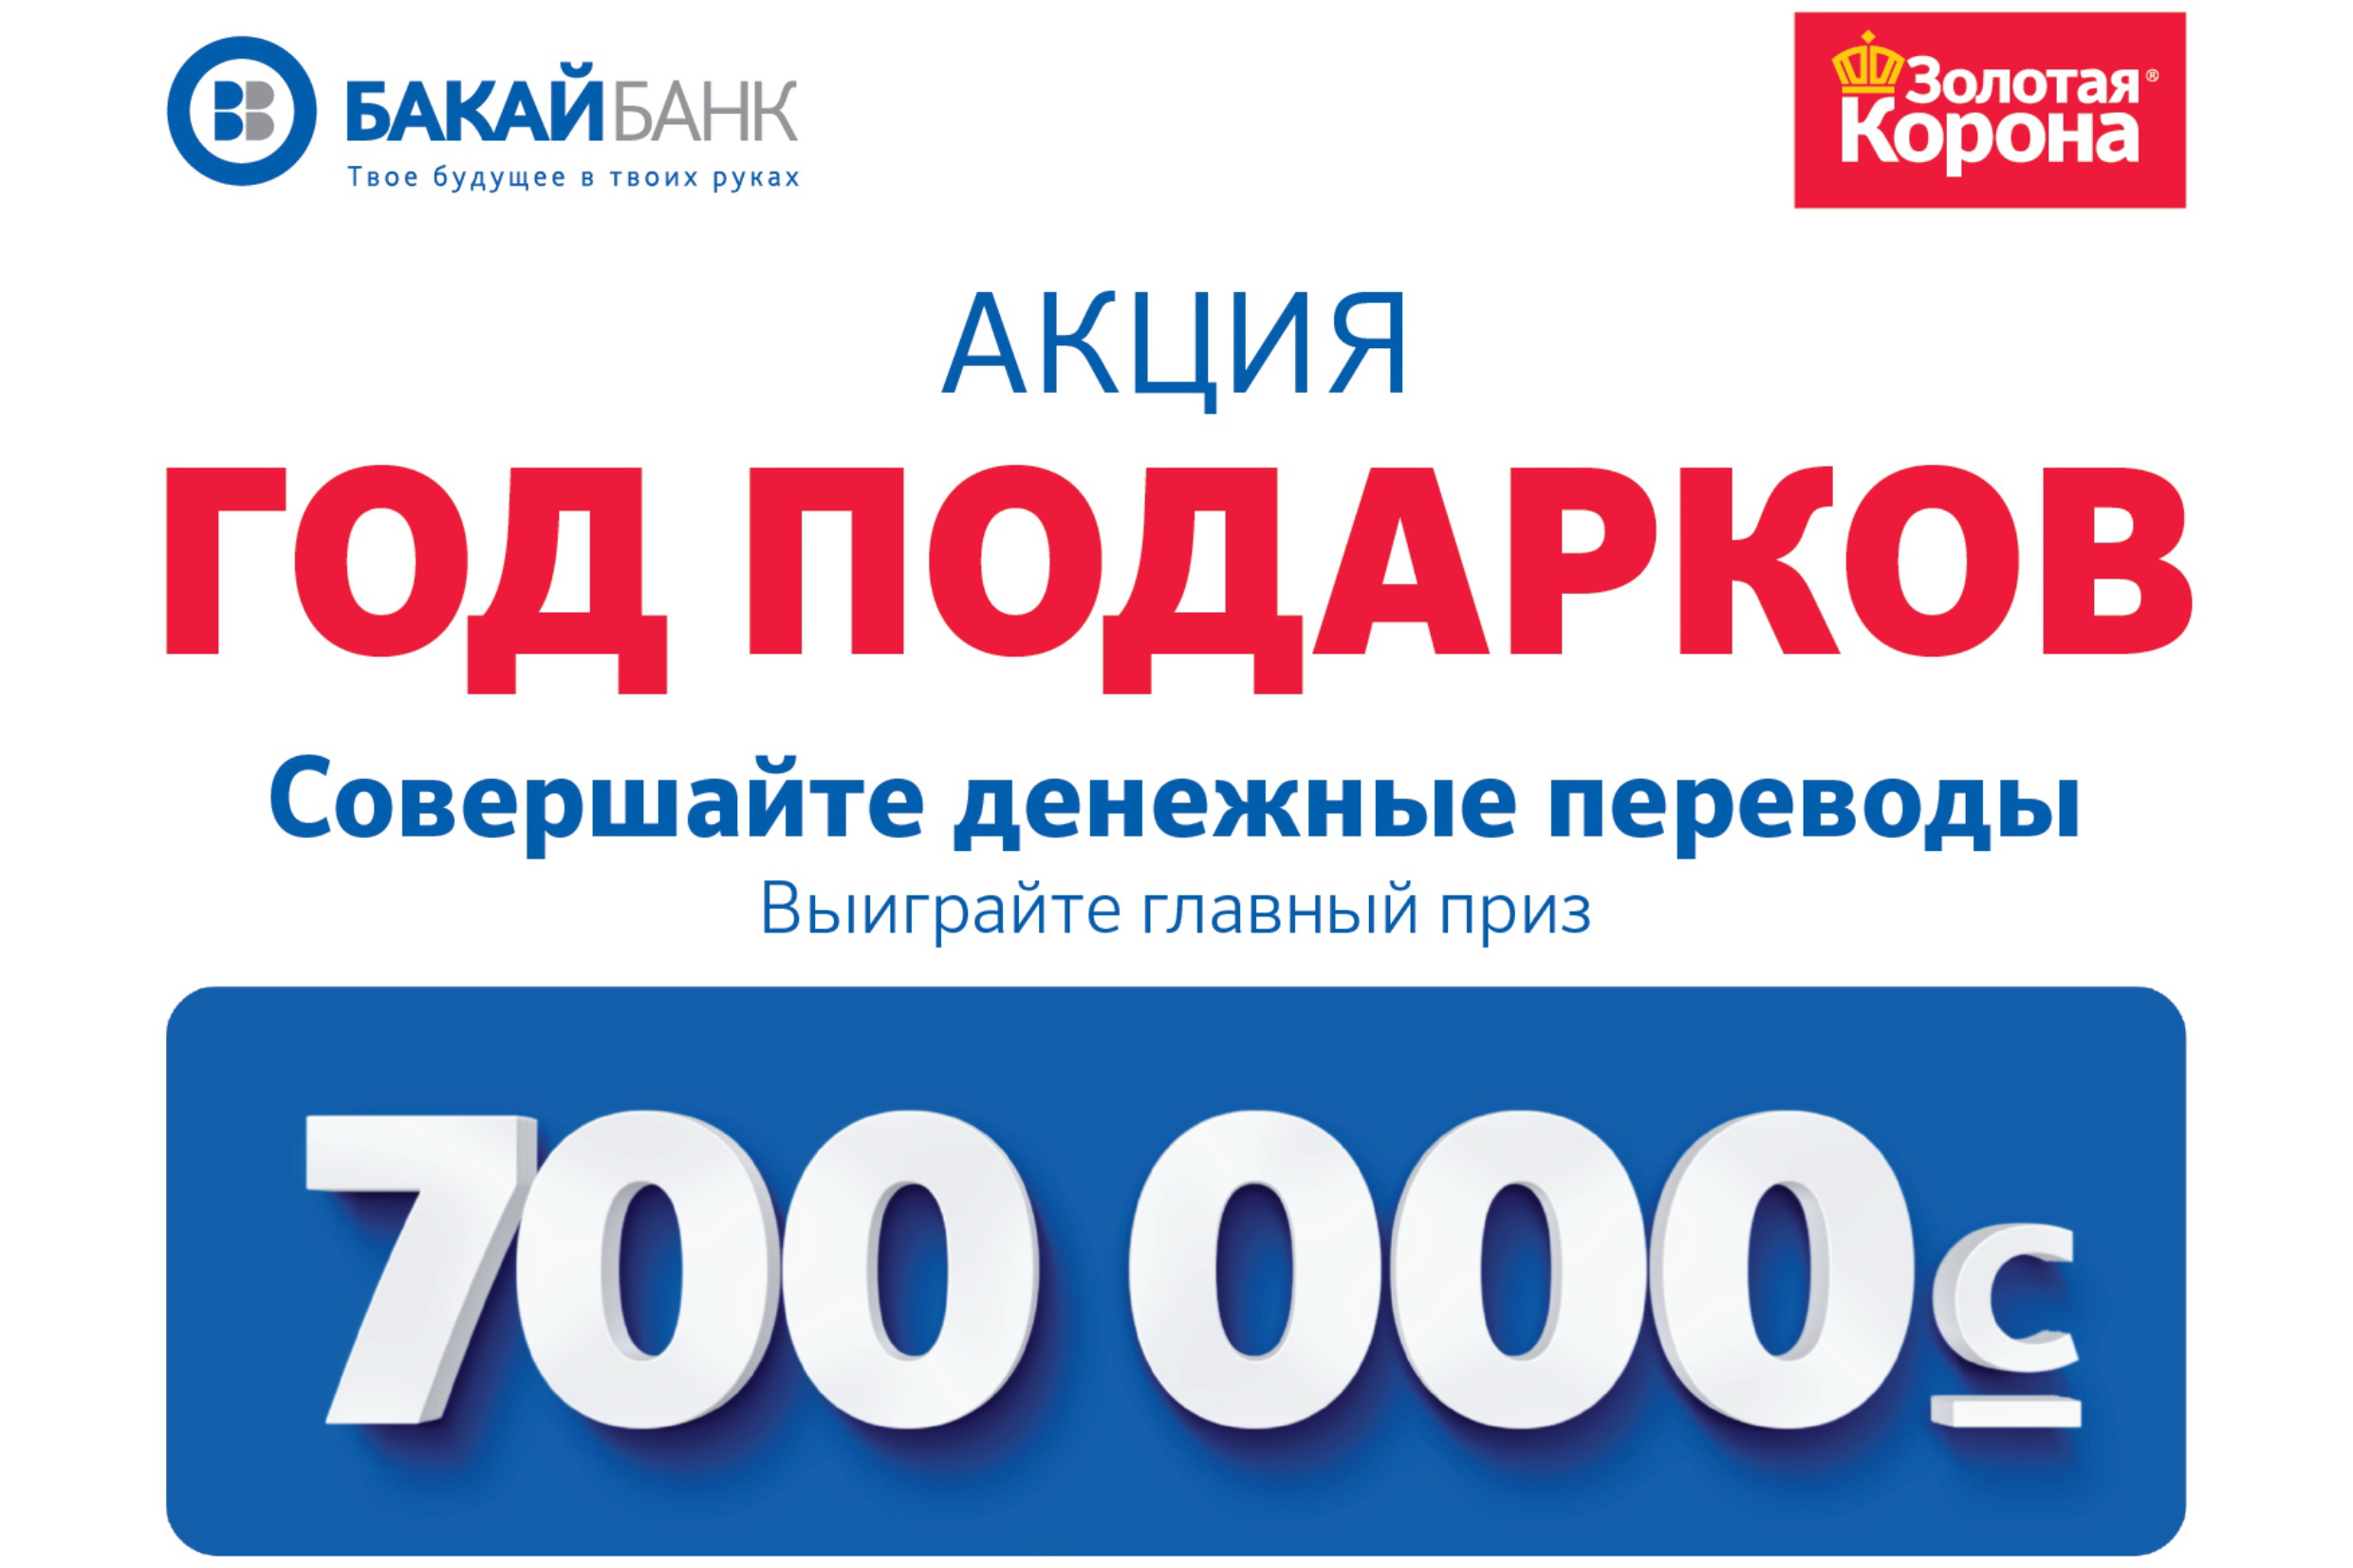 Бакай банк курс. Бакай банк. Бакай банк Бишкек. Бакай банк логотип. Выиграй главный приз.